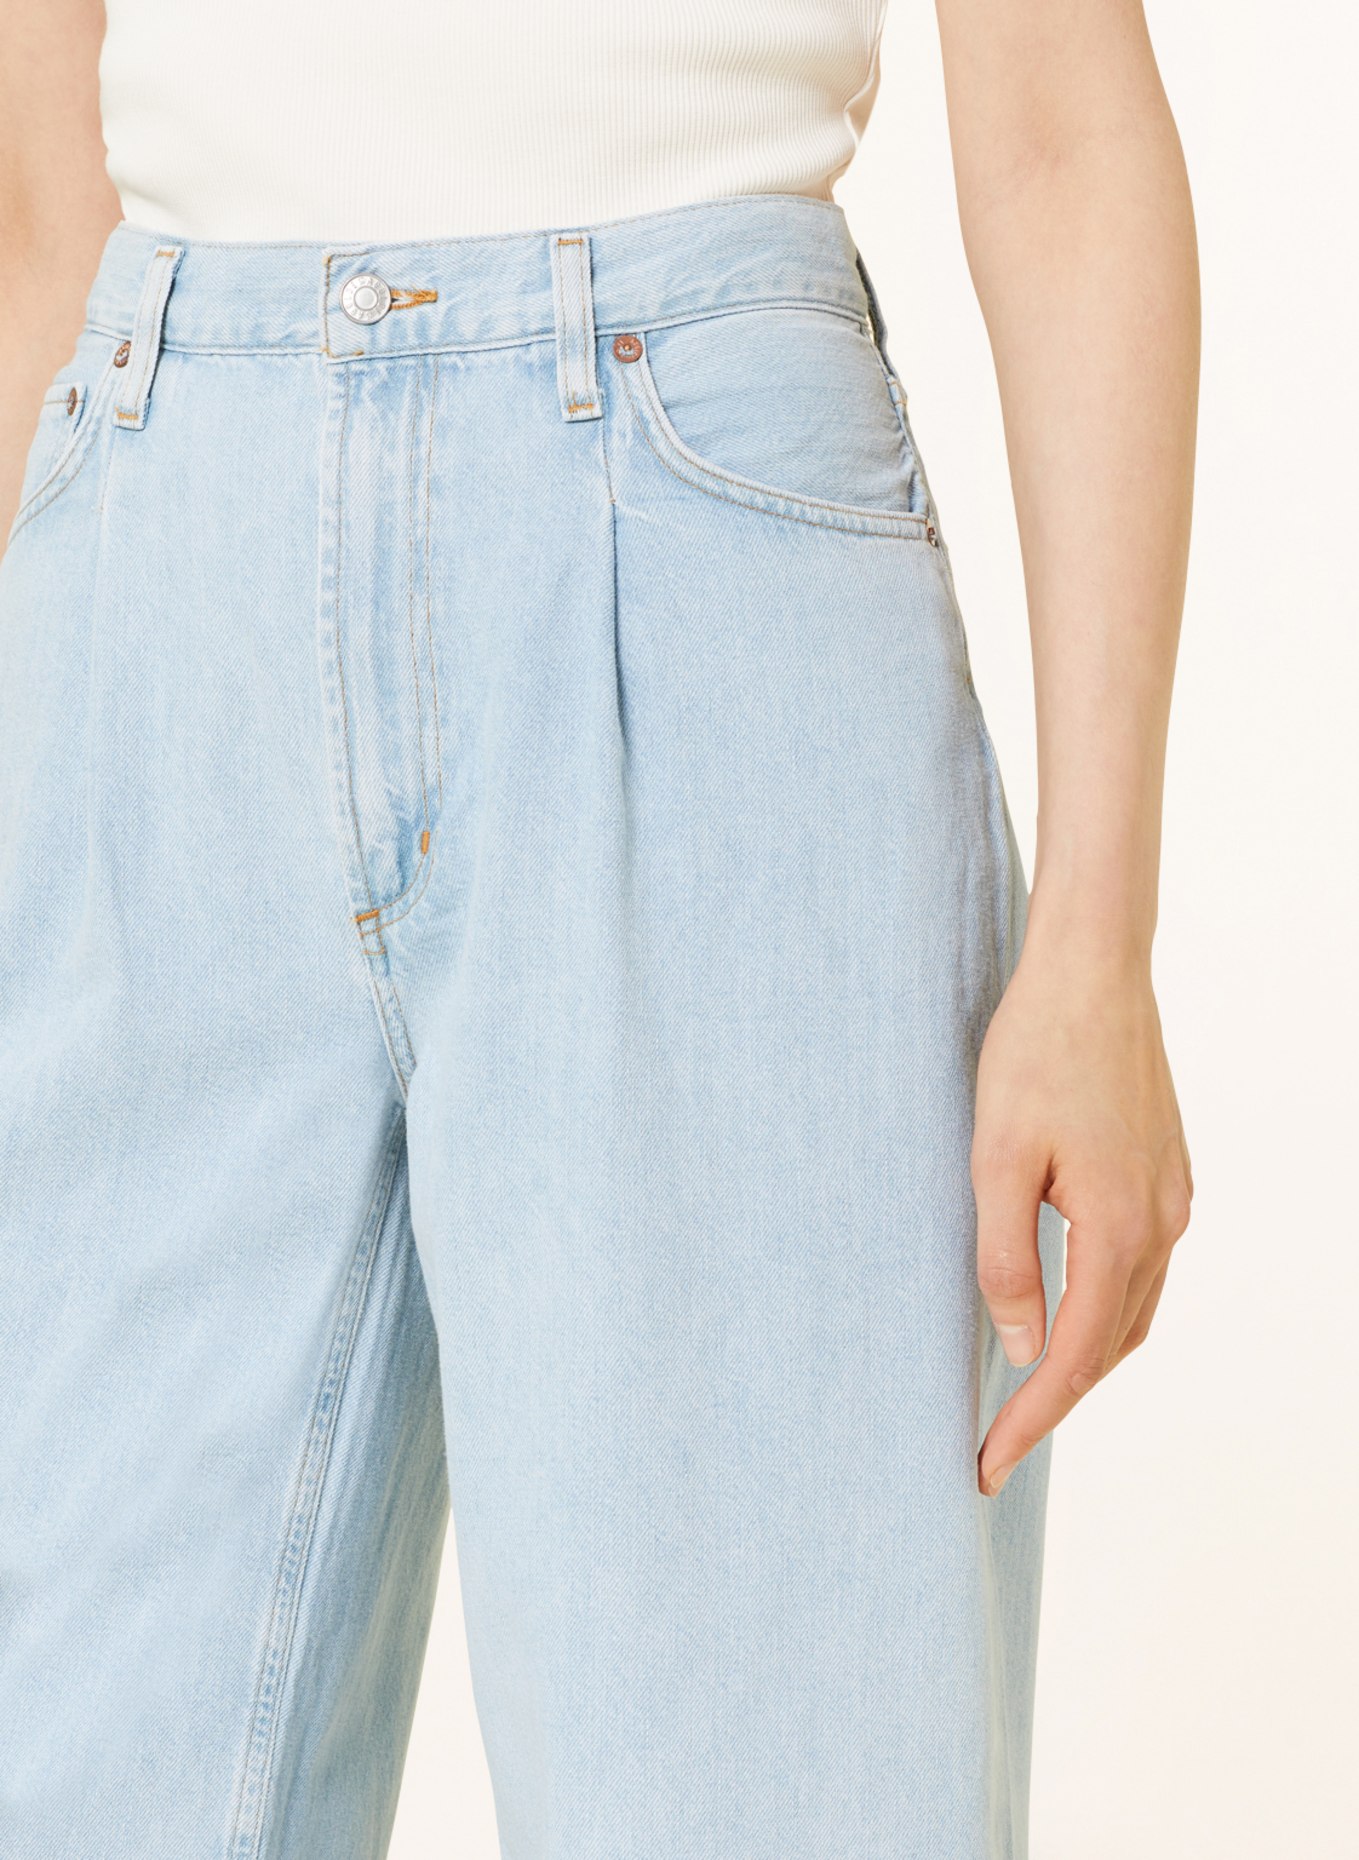 AGOLDE Culotte jeans DAGNA, Color: Pivot med washed ind (Image 5)